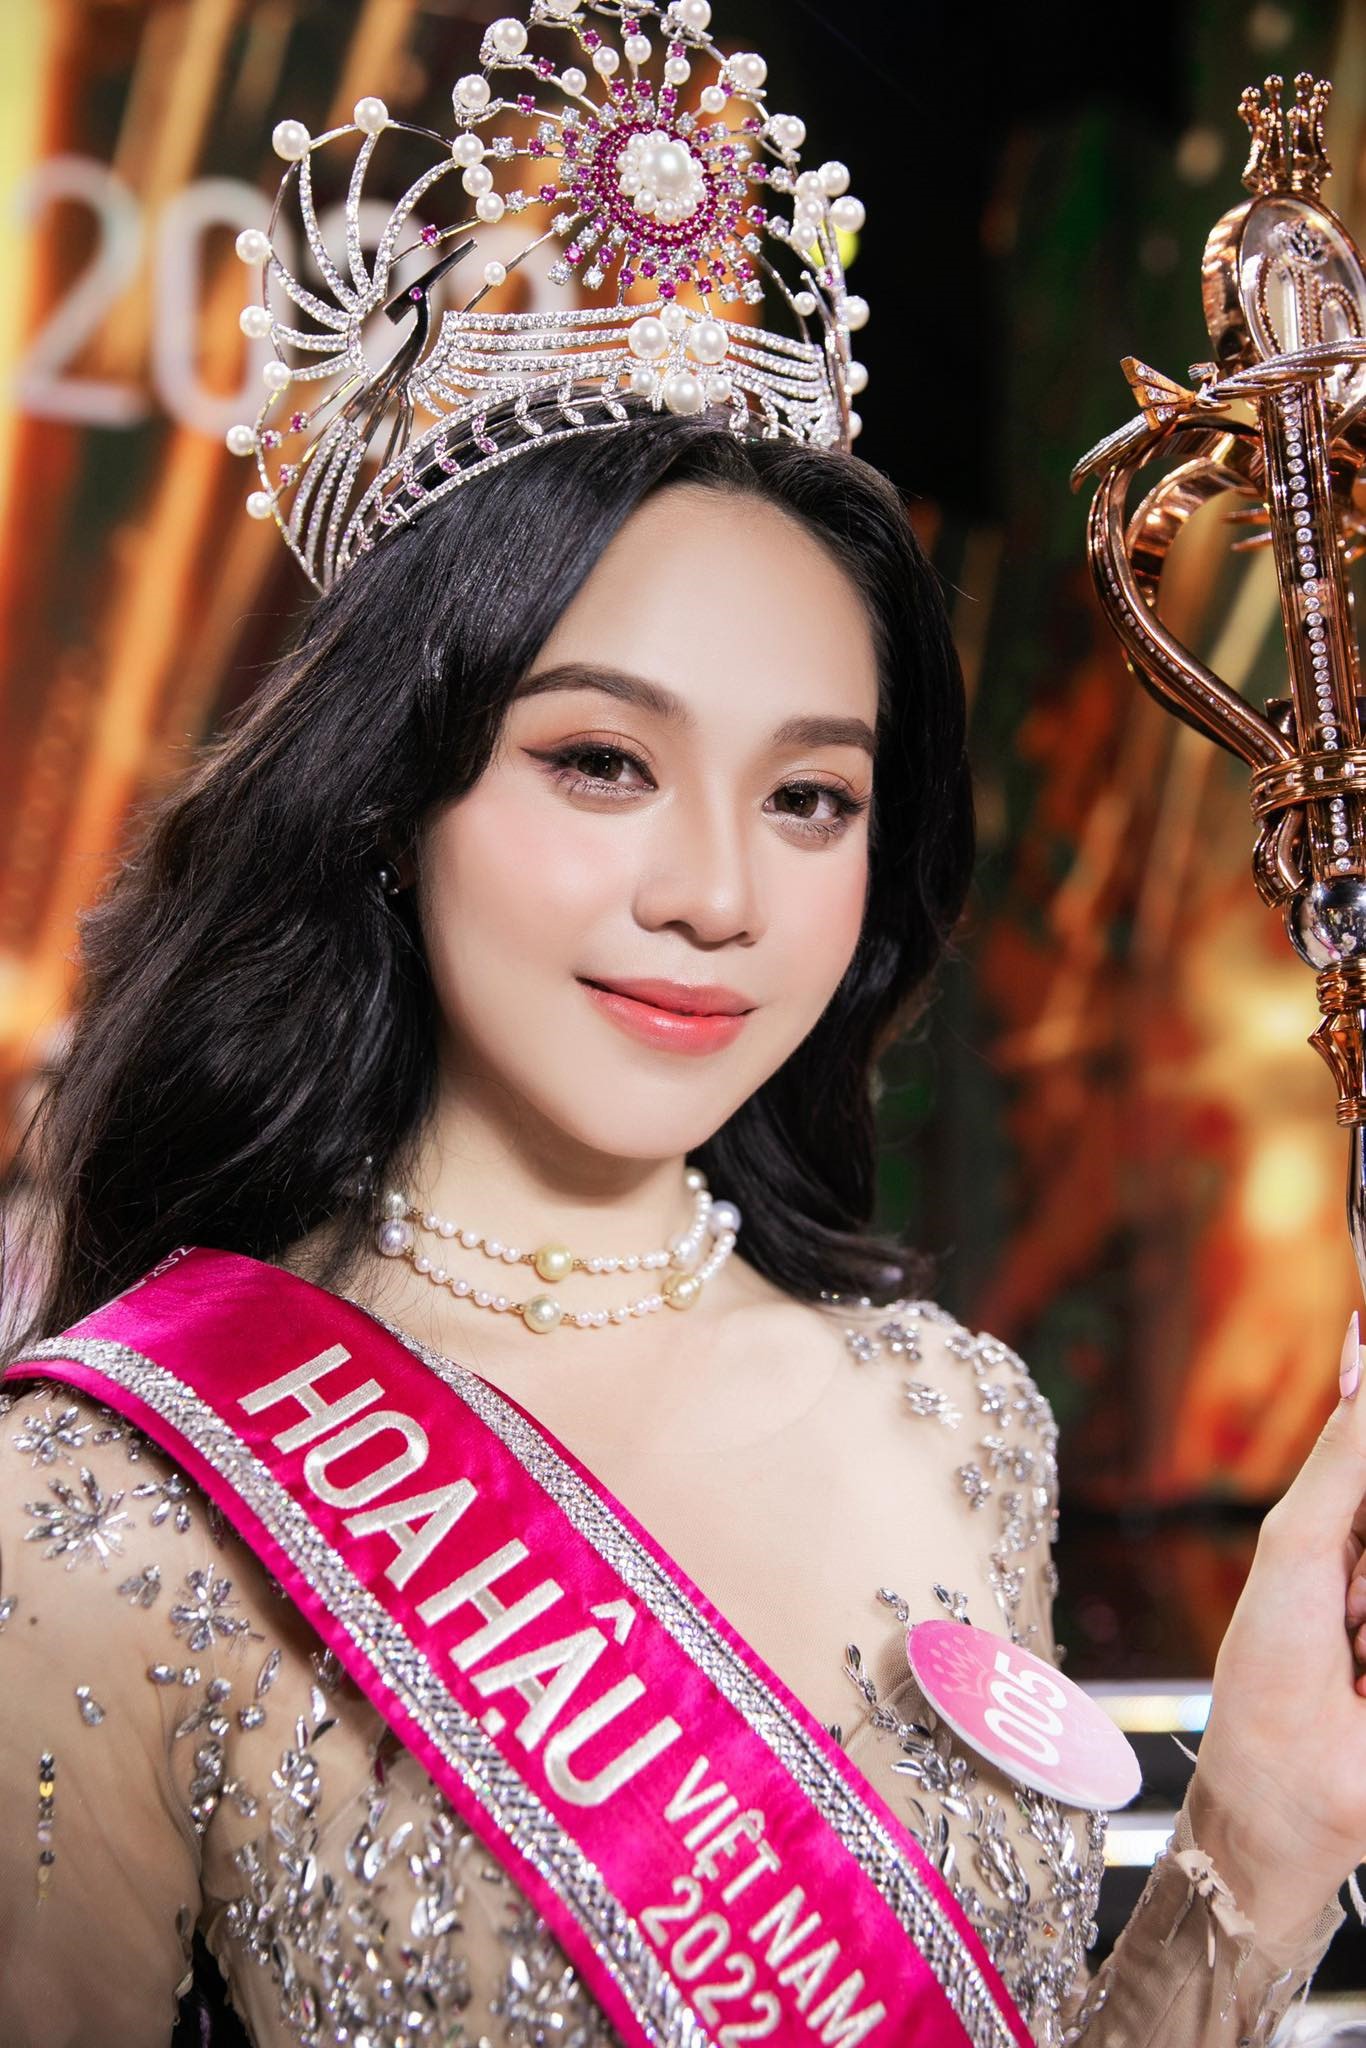 Tân Hoa hậu Việt Nam 2022 sinh năm 2003, tại Đà Nẵng. Thanh Thủy có chiều cao 1,75 m, số đo ba vòng 80-63-94 cm và gương mặt xinh xắn, trẻ trung.